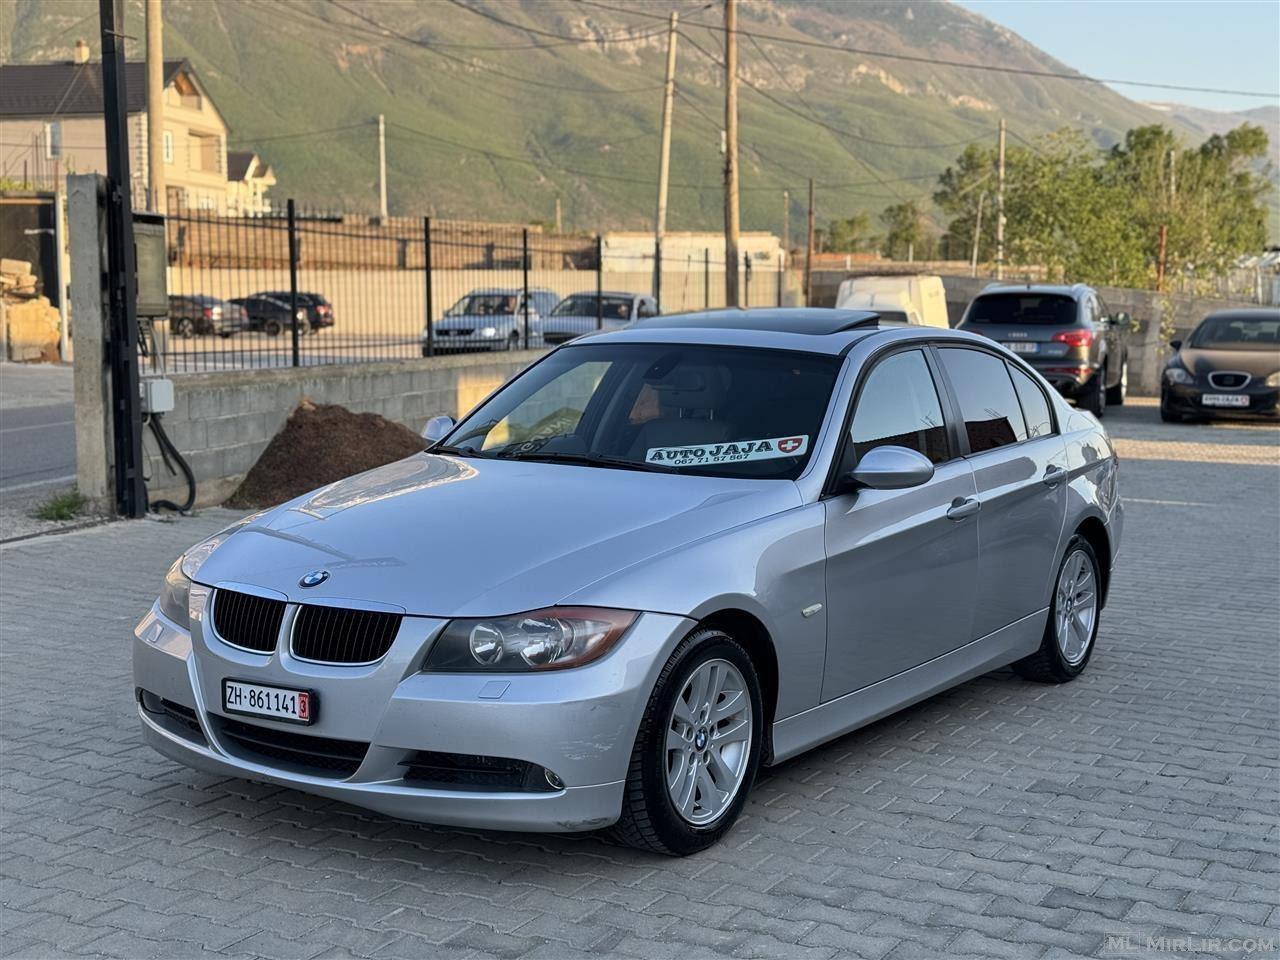 BMW SERIA 3 2.5Benzin Automat sapo ardhur nga zvicra??